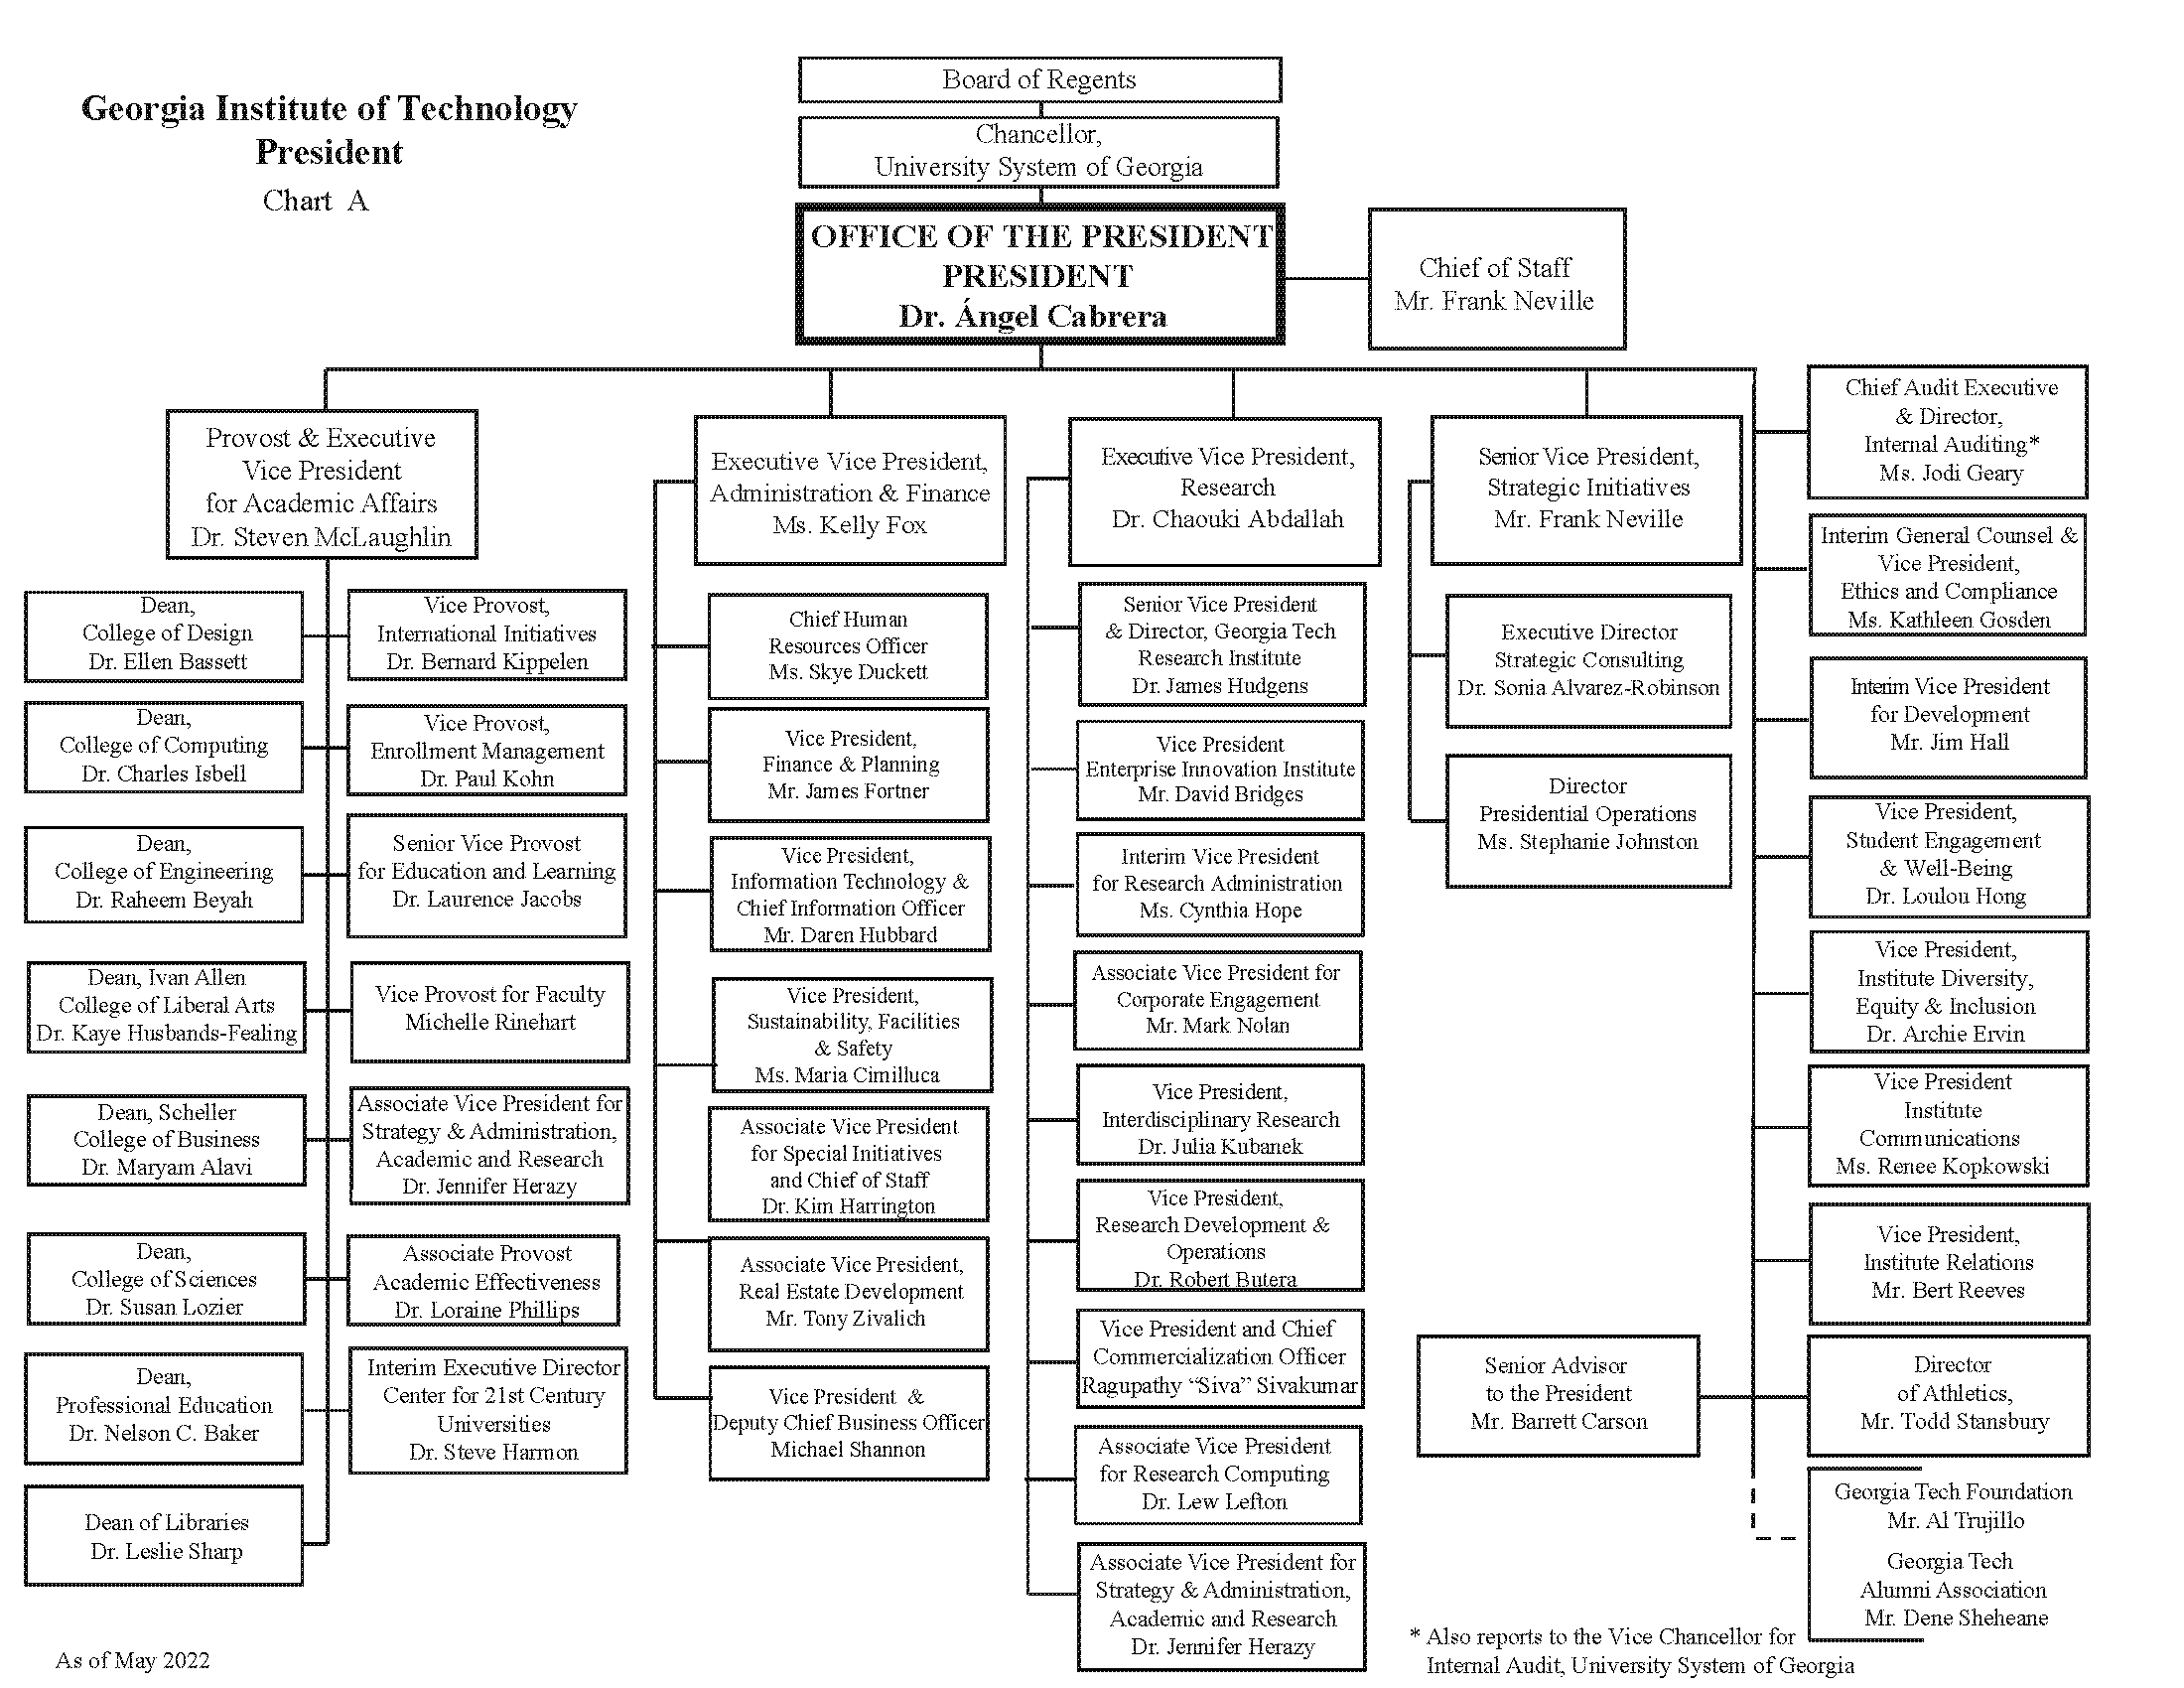 Organizational Chart A (May 2022)